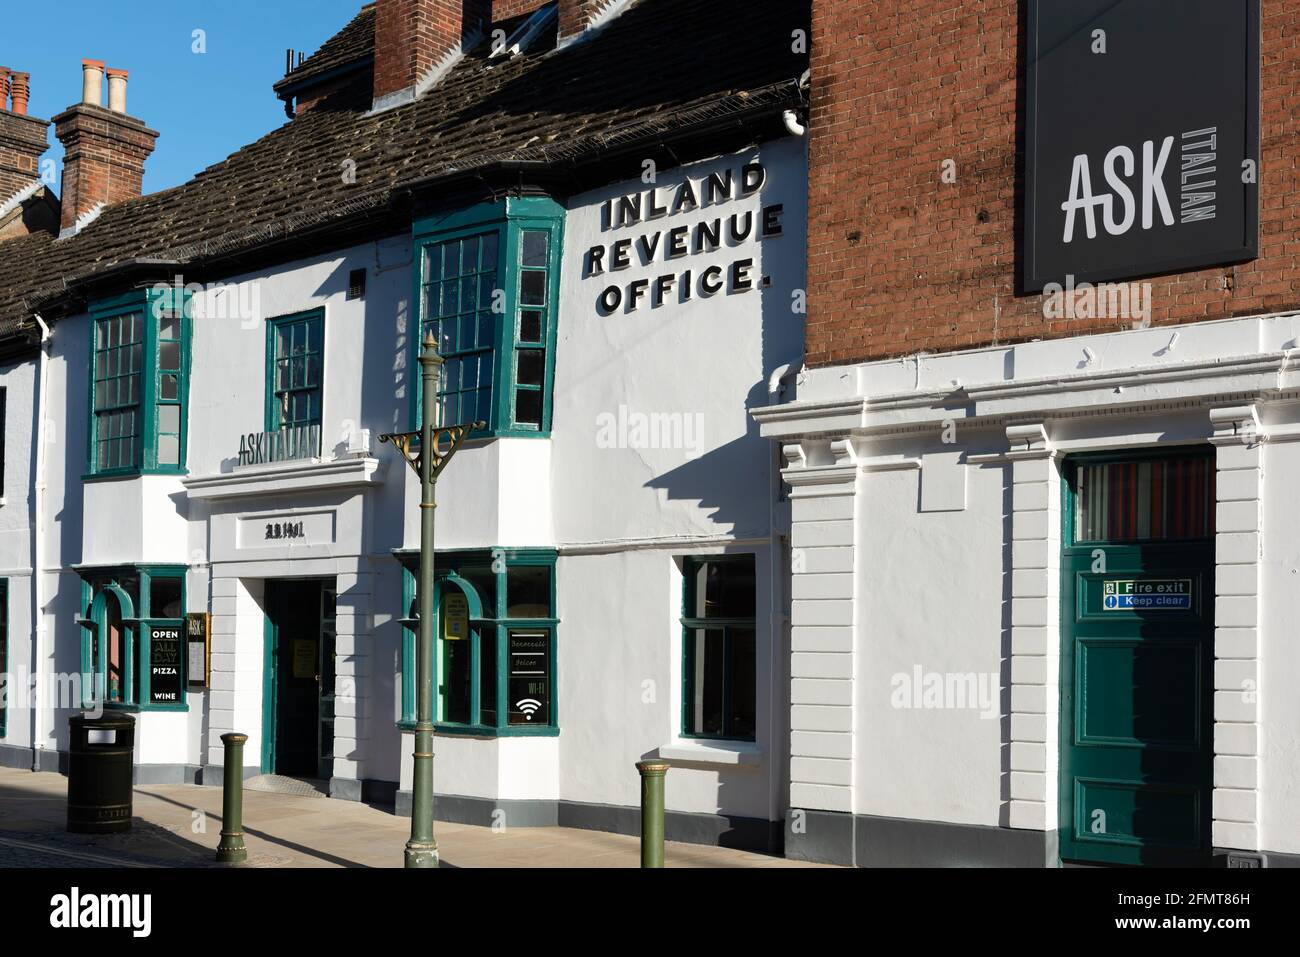 L'ex ufficio Inland Revenue sul Carfax, centro di Horsham, che è ora un ristorante italiano Ask, West Sussex, Regno Unito Foto Stock